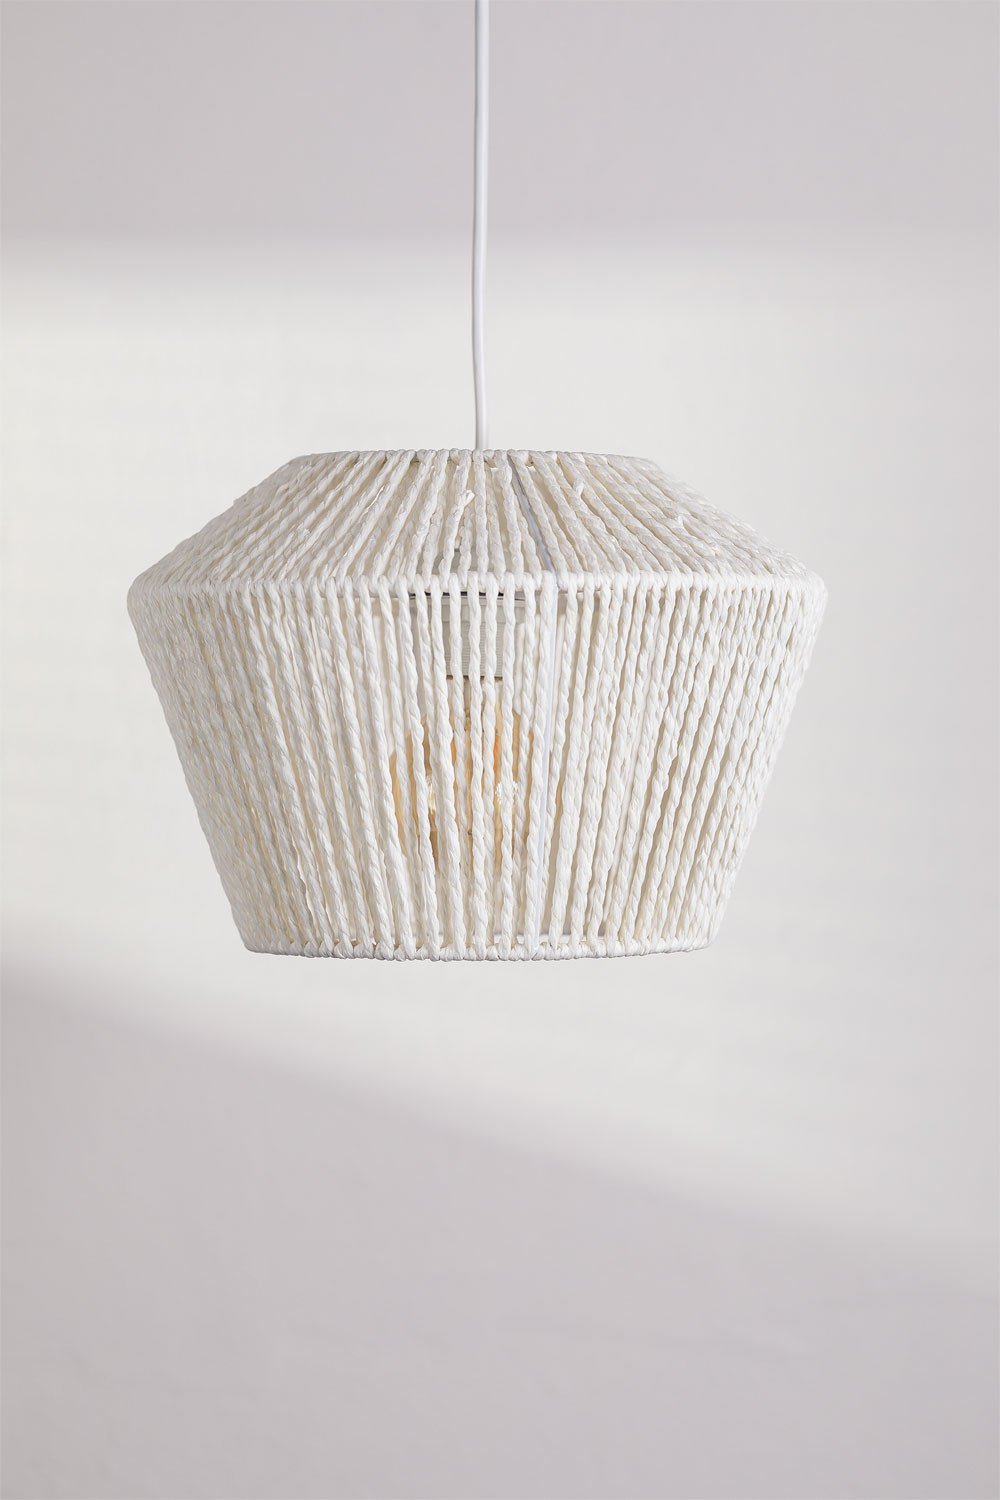 Lámpara de techo elaborada con trenzado de papel.